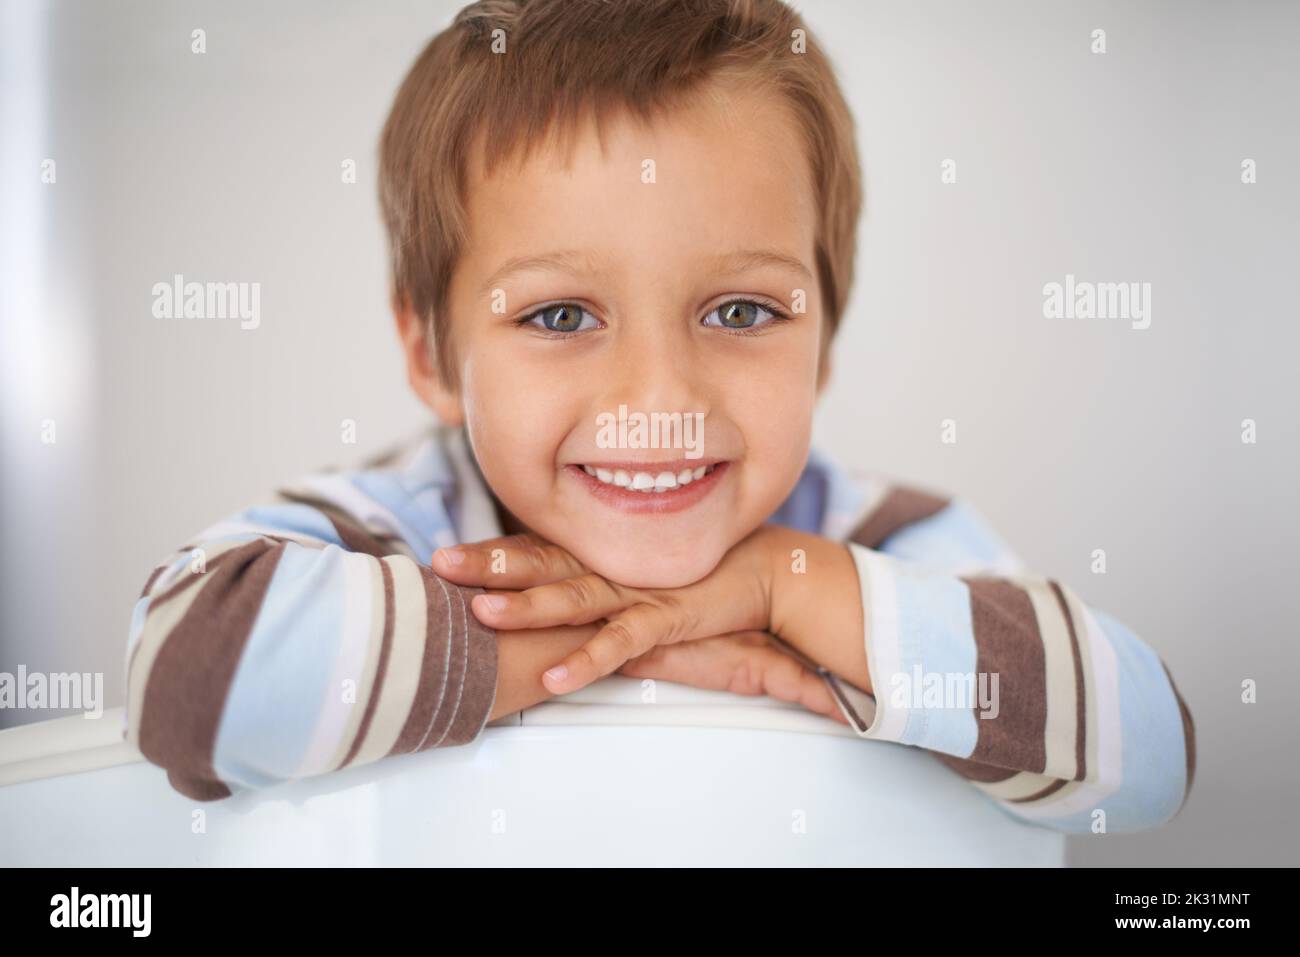 Ein Gesicht, zu dem man einfach nicht nein sagen kann. Ein Porträt eines glücklichen Jungen, der seinen Kopf auf seine Arme legte. Stockfoto